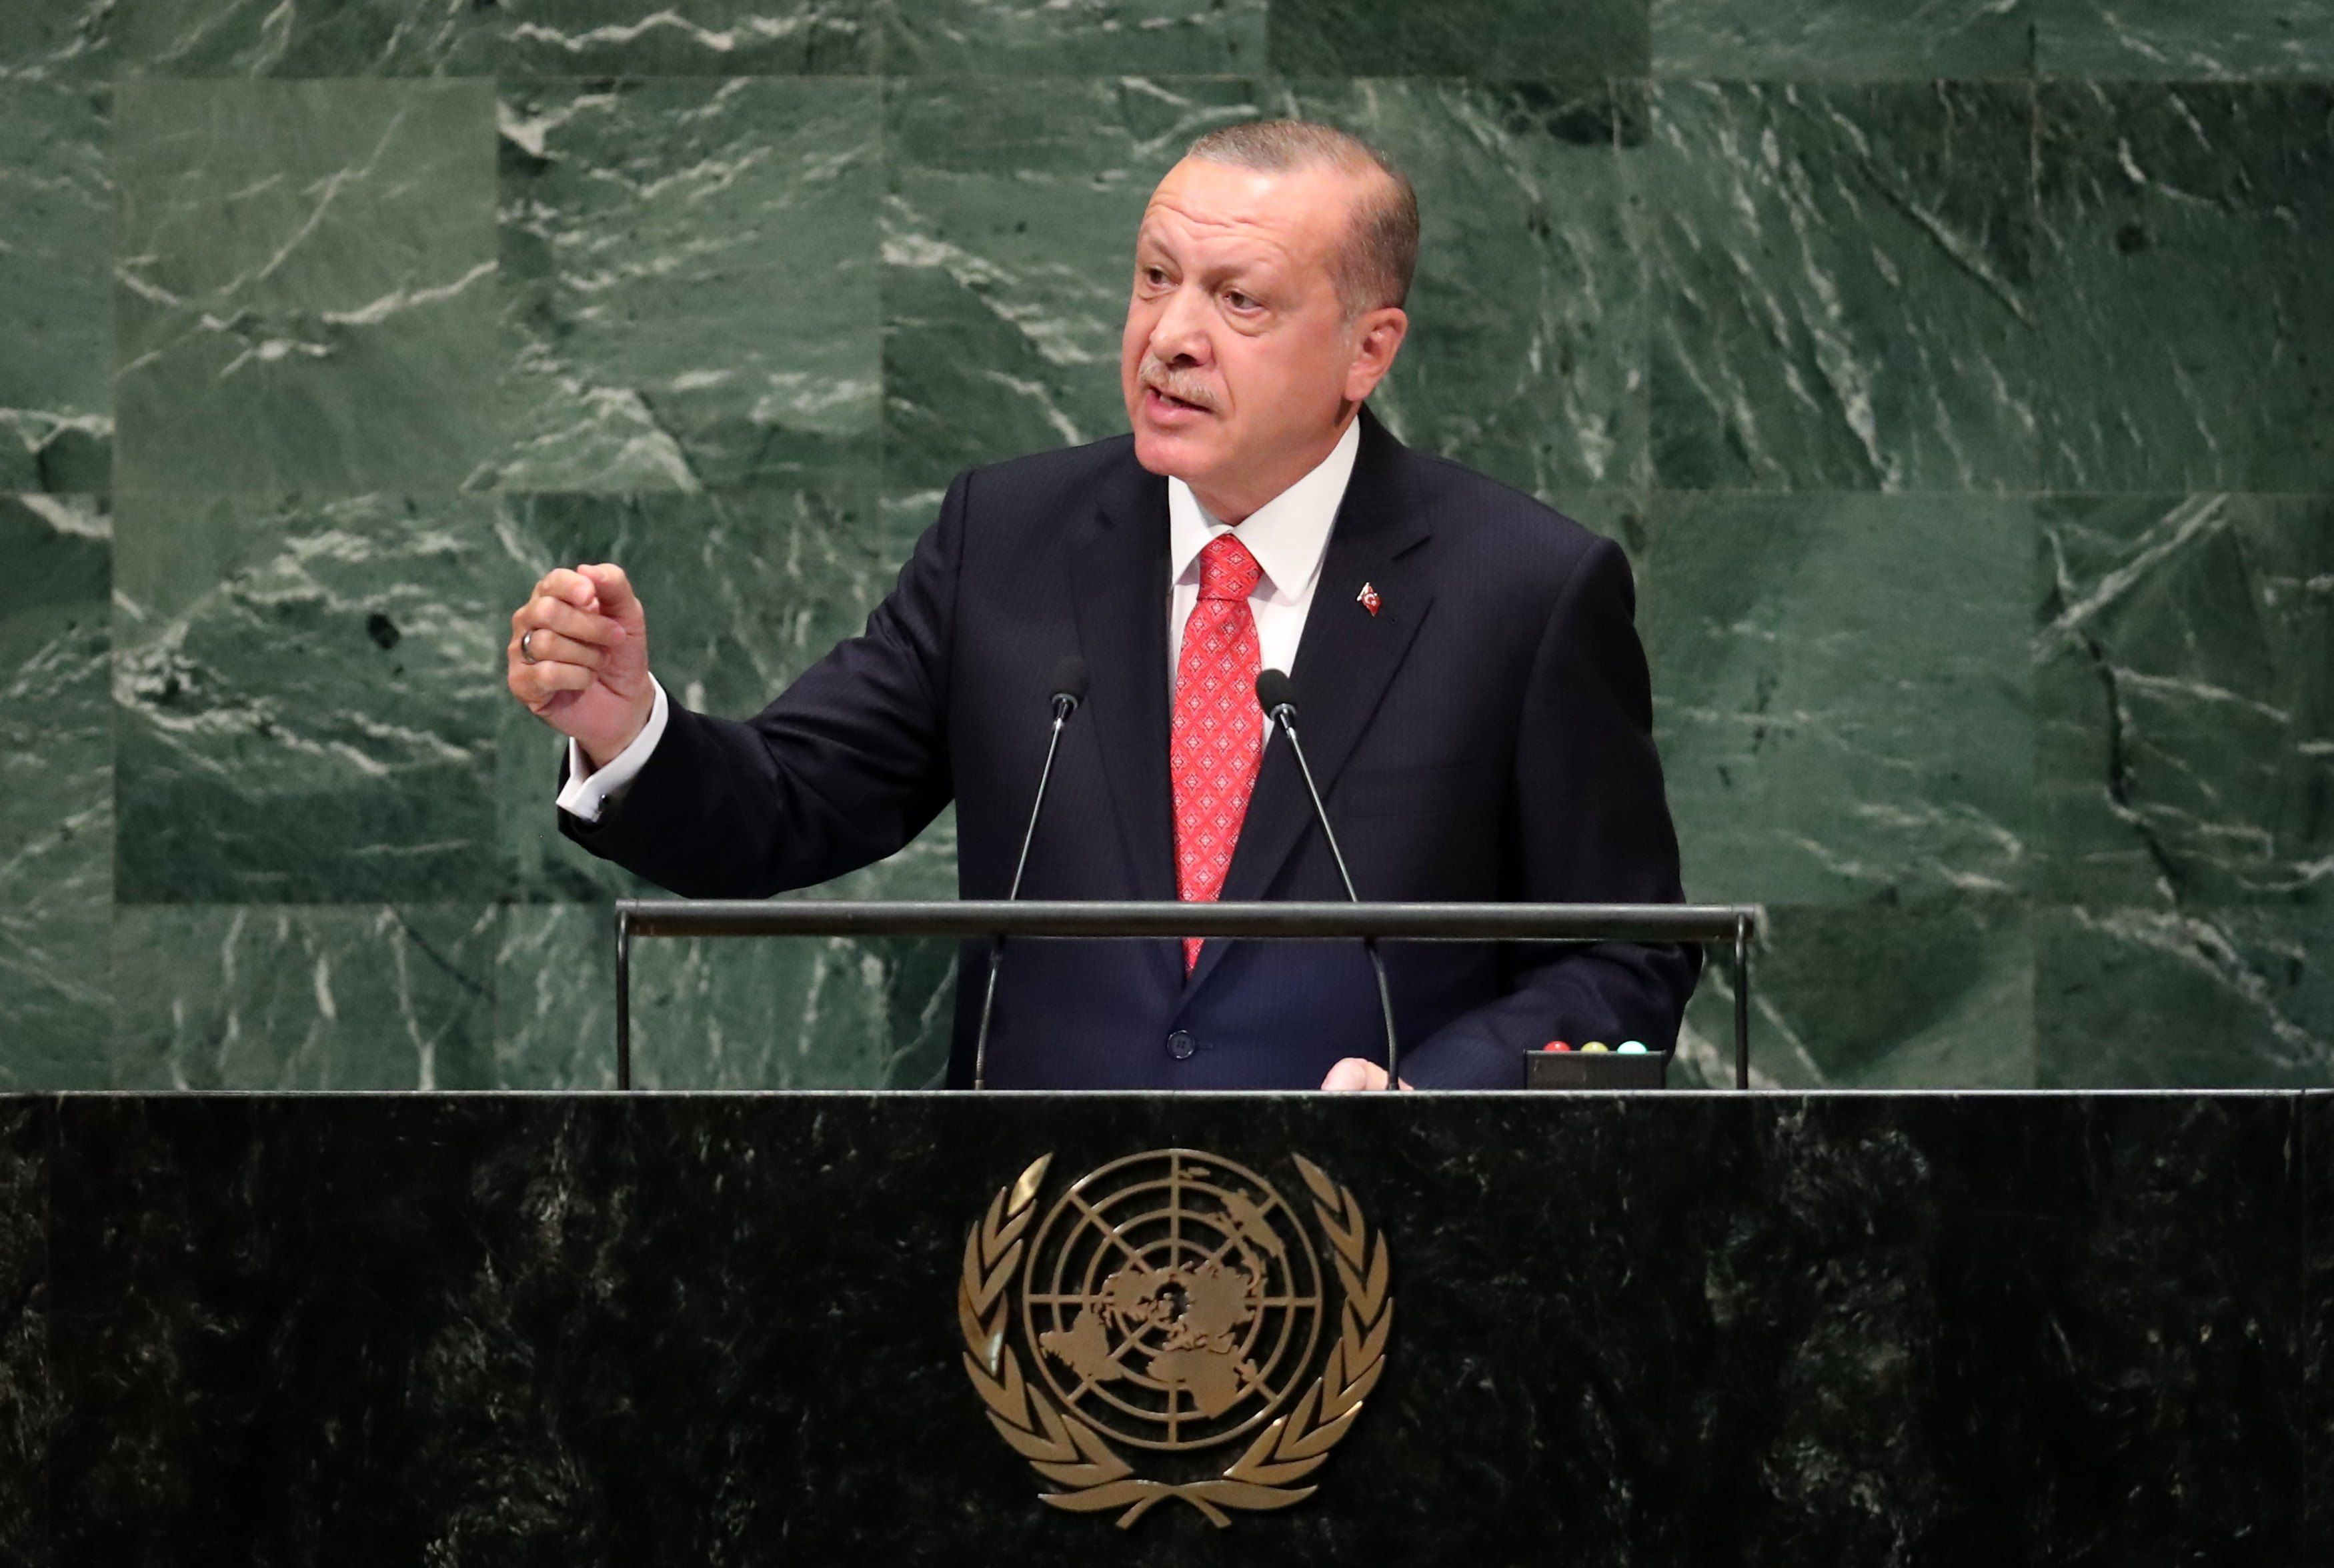 Recep Tayyip Erdogan y su delegación abandonó momentáneamente la sede de los debates en la ONU durante la intervención de su par estadounidense.